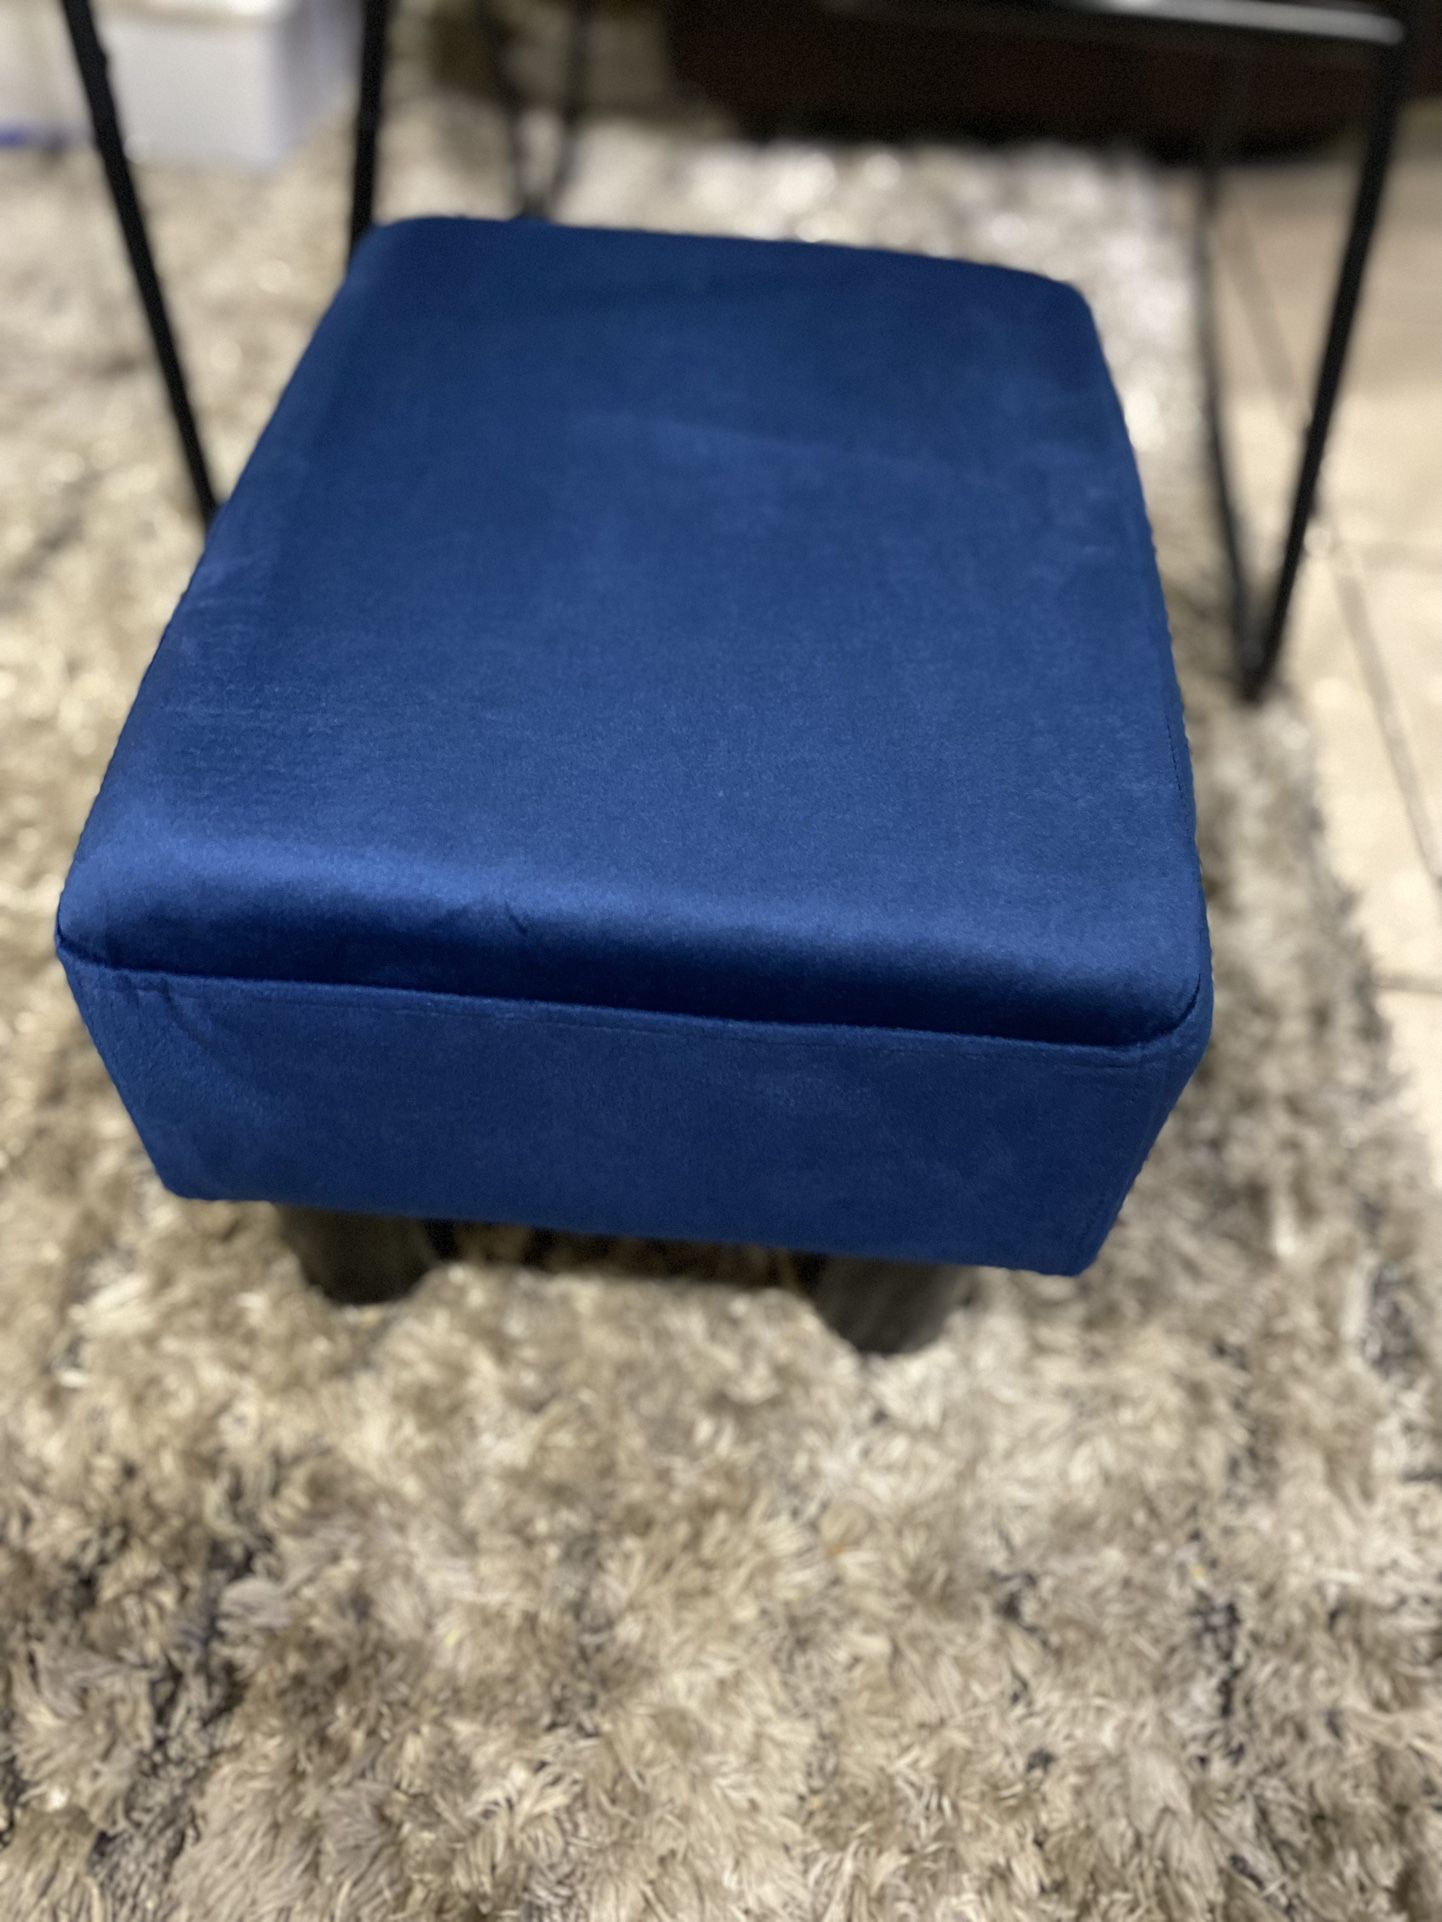 Small Rectangular Stool, Velvet Fabric Footstool with Non-Slip Plastic Legs, Modern Footstool for Sofa, Desk, Office, Living Room, Dogs, Navy Blue